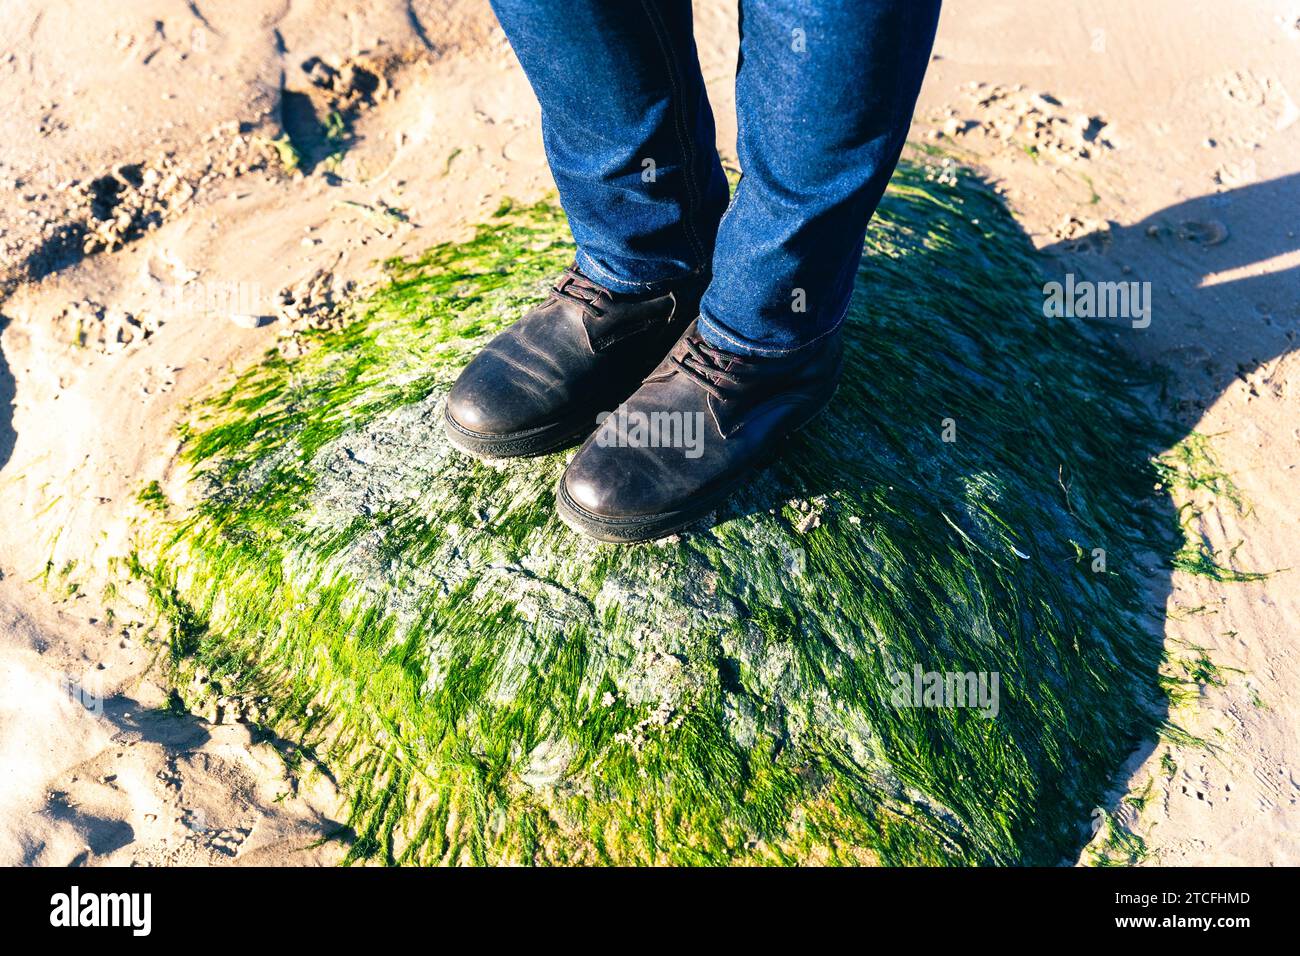 Eine Nahaufnahme der Füße einer Frau in Stiefeln und blauen Jeans, die auf einem mit grünen Algen bedeckten Stein stehen, zeigt das Konzept von Outdoor-Abenteuern und Ex Stockfoto